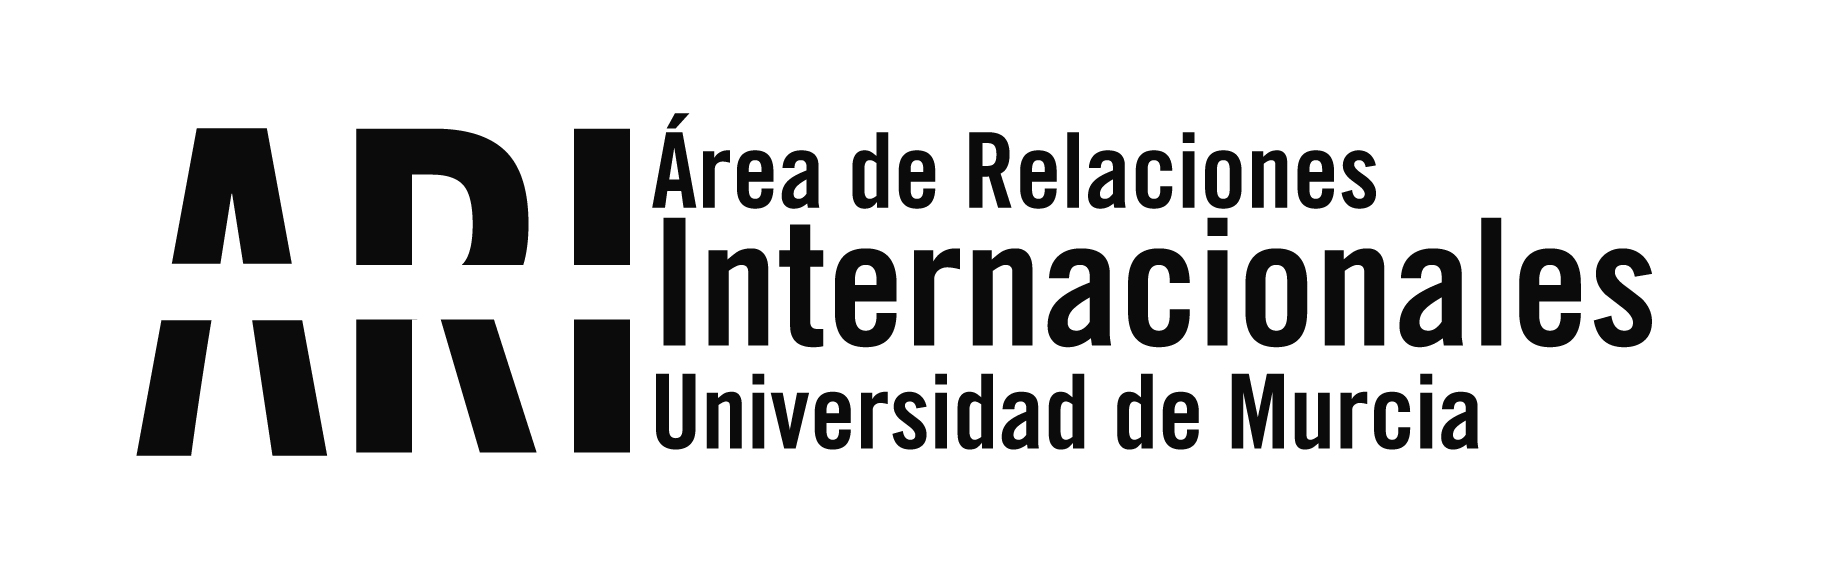 BUMI18 Bienvenida Internacional de la Universidad de Murcia del 21 al 30 de septiembre - Área de Relaciones Internacionales